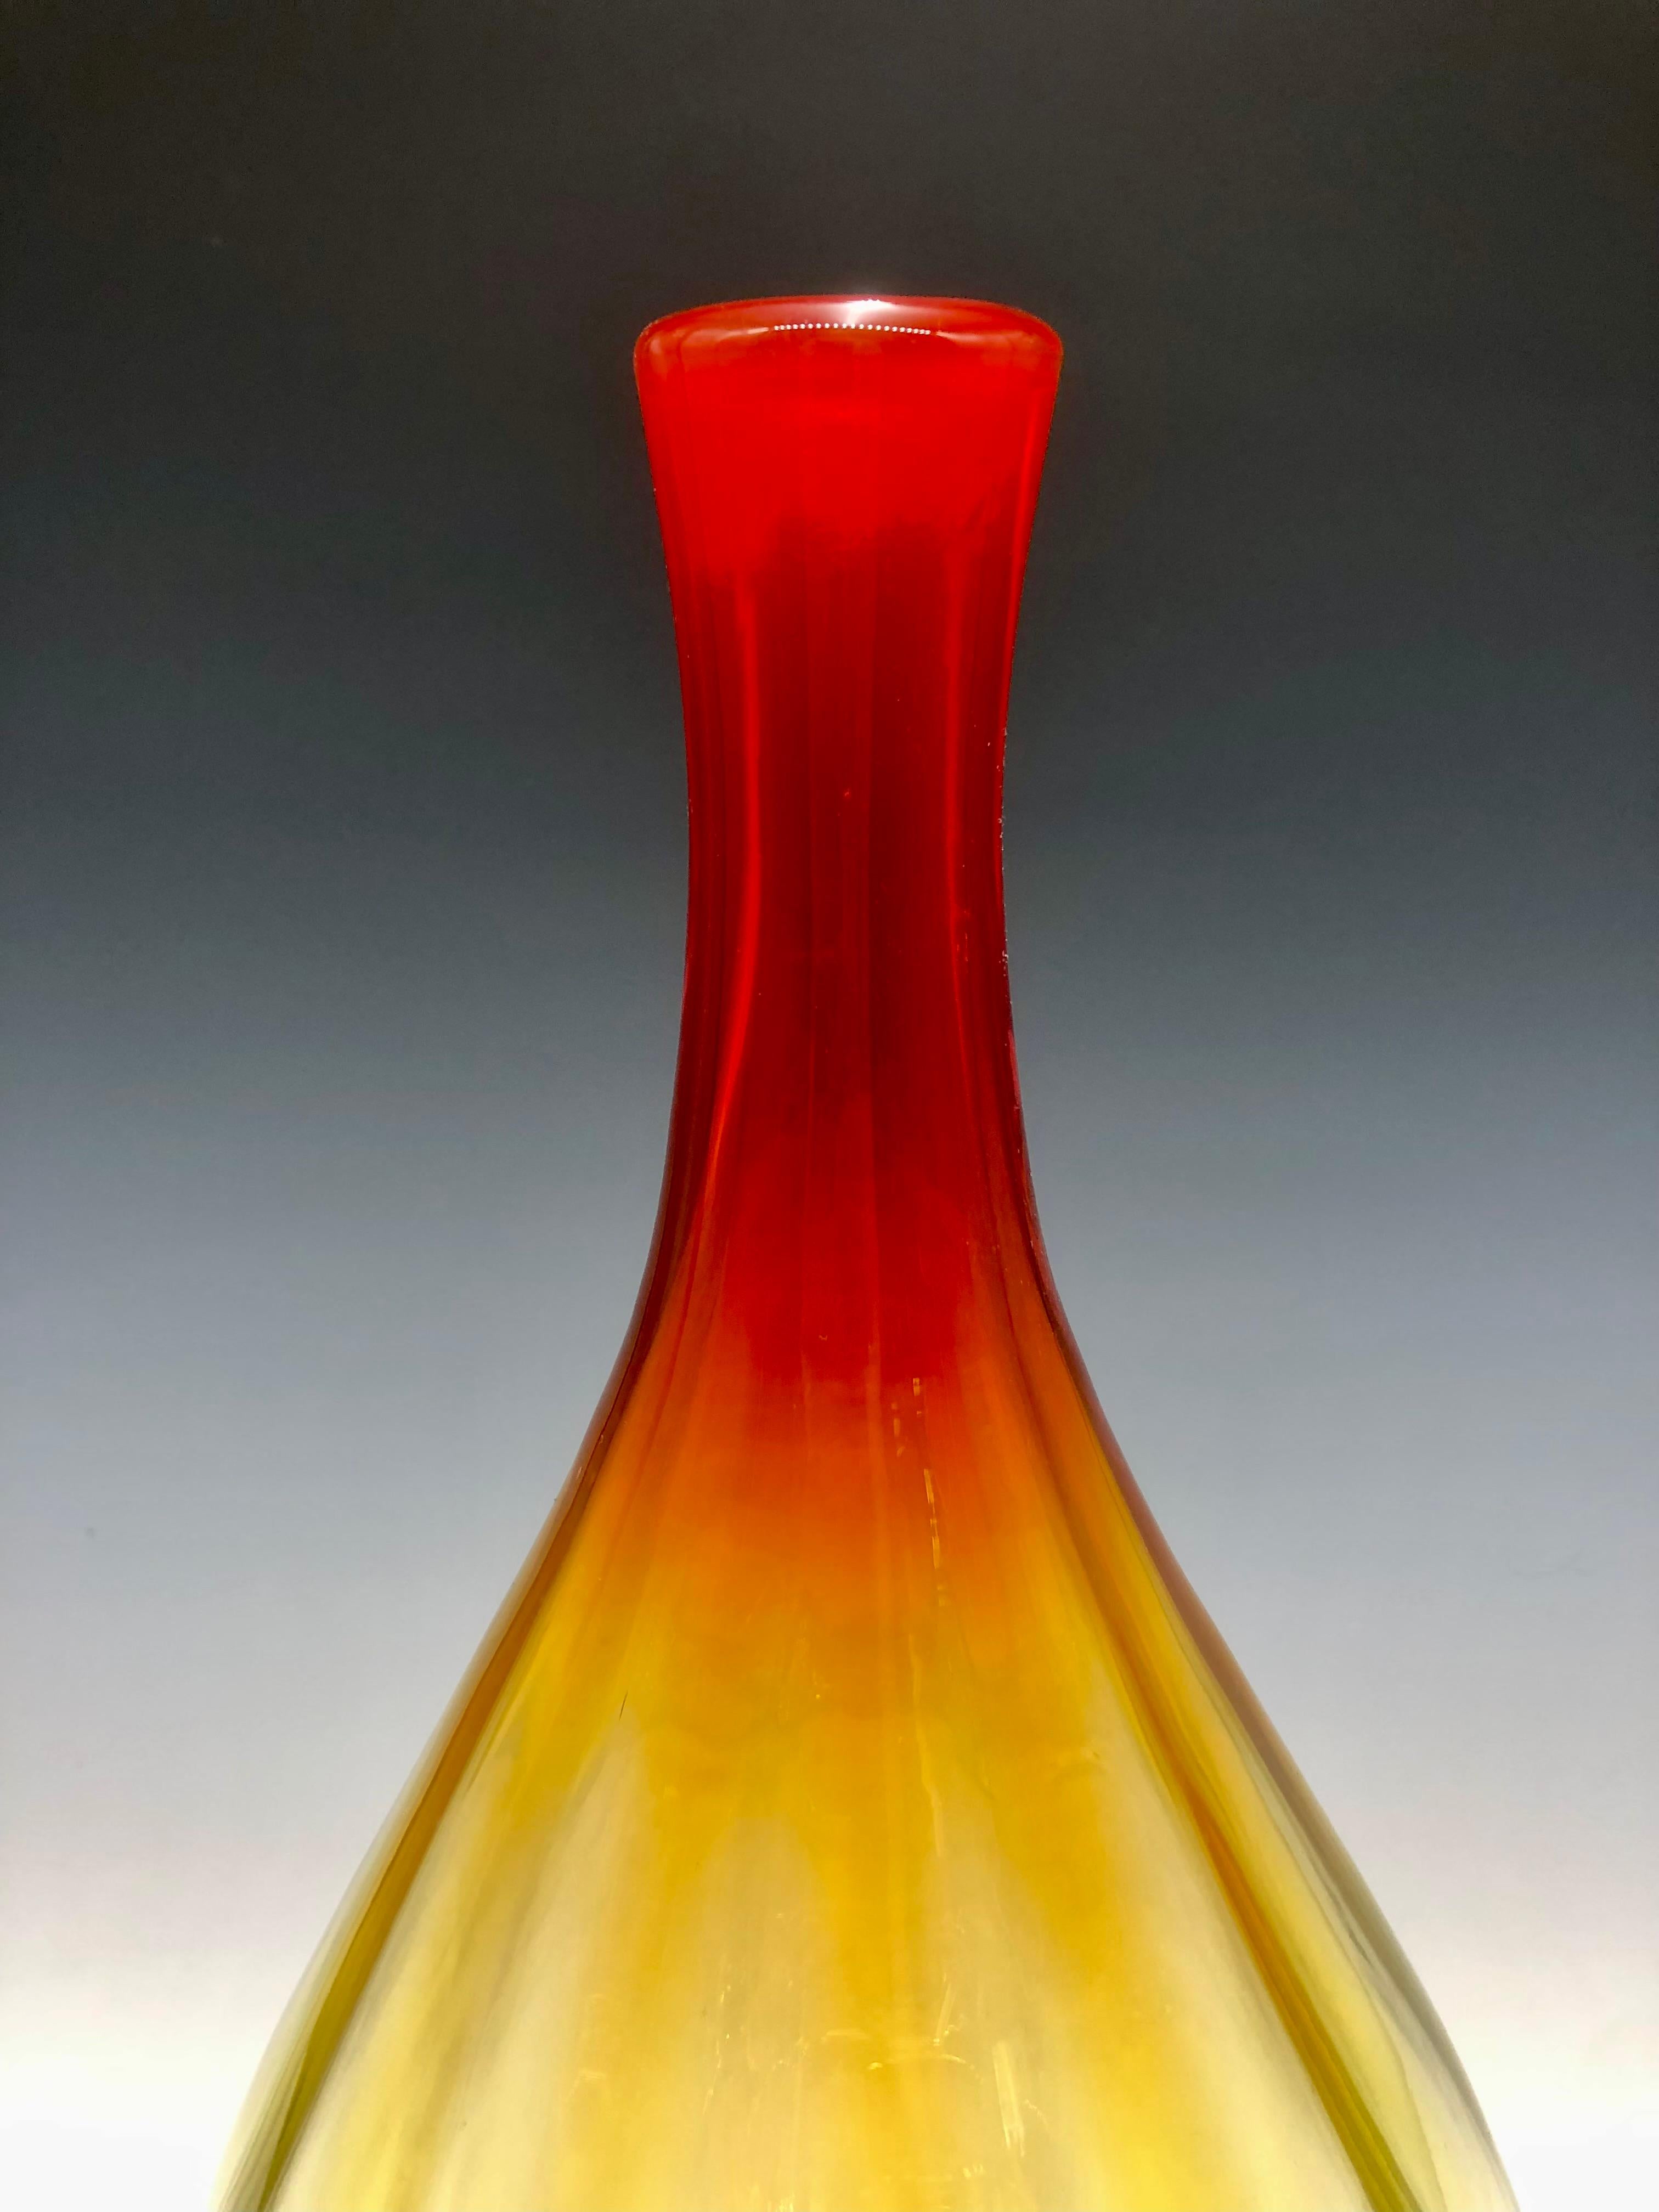 Grand vase en verre nervuré jaune rouge amberina Blenko - Sculpture de Blenko Glass